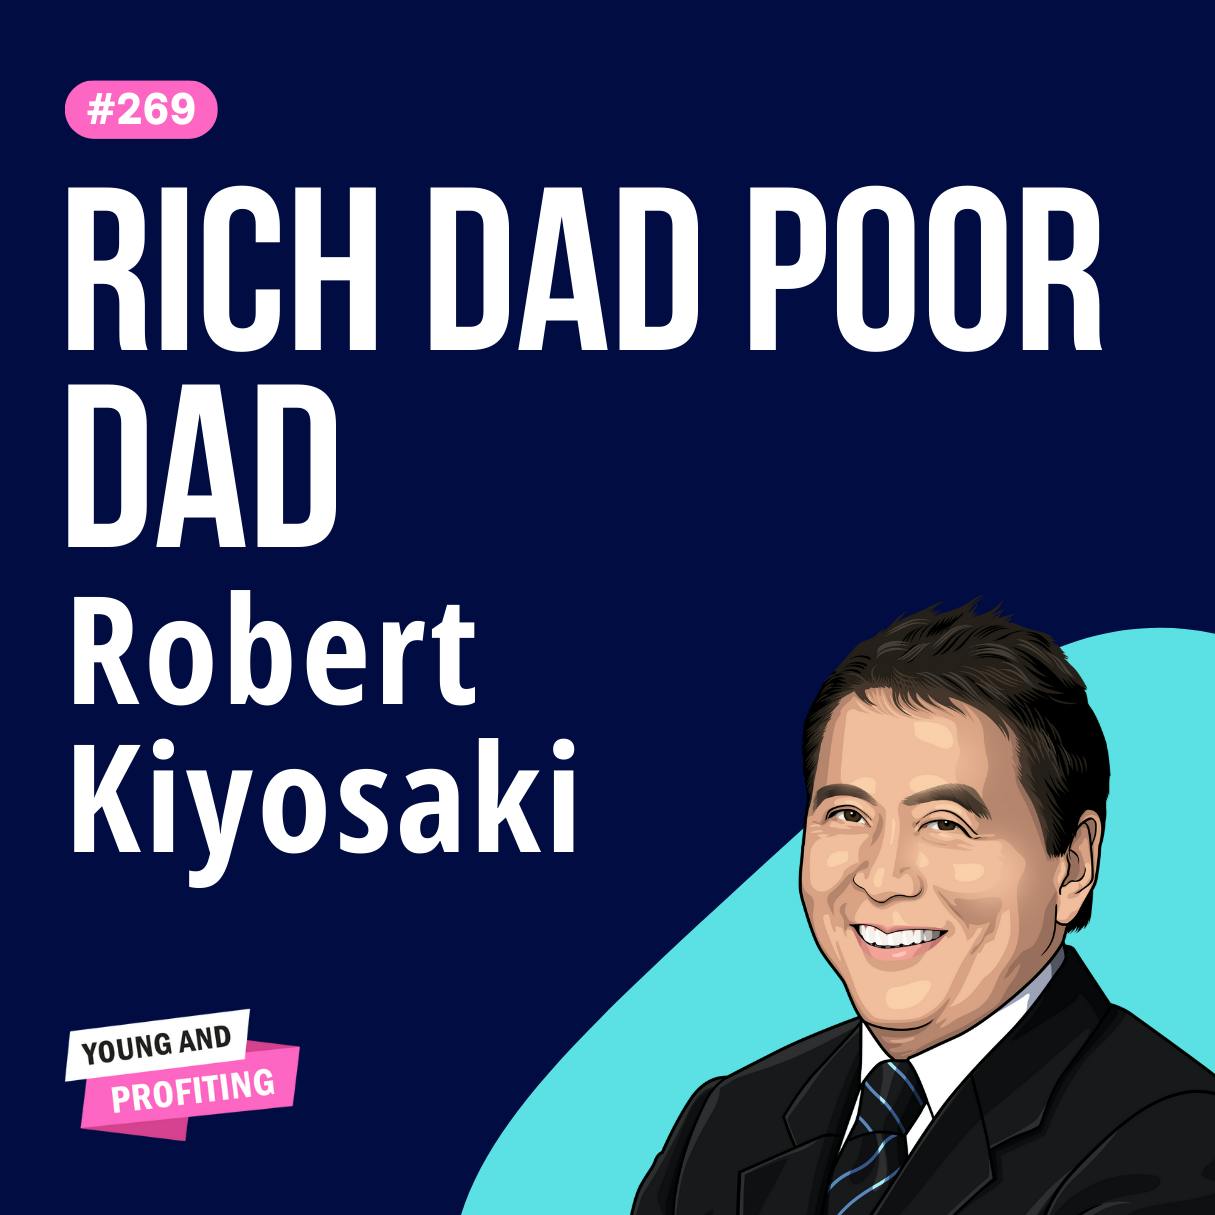 Robert Kiyosaki: Rich Dad Poor Dad, These Common Beliefs Keep Hard-Working People Poor | E269